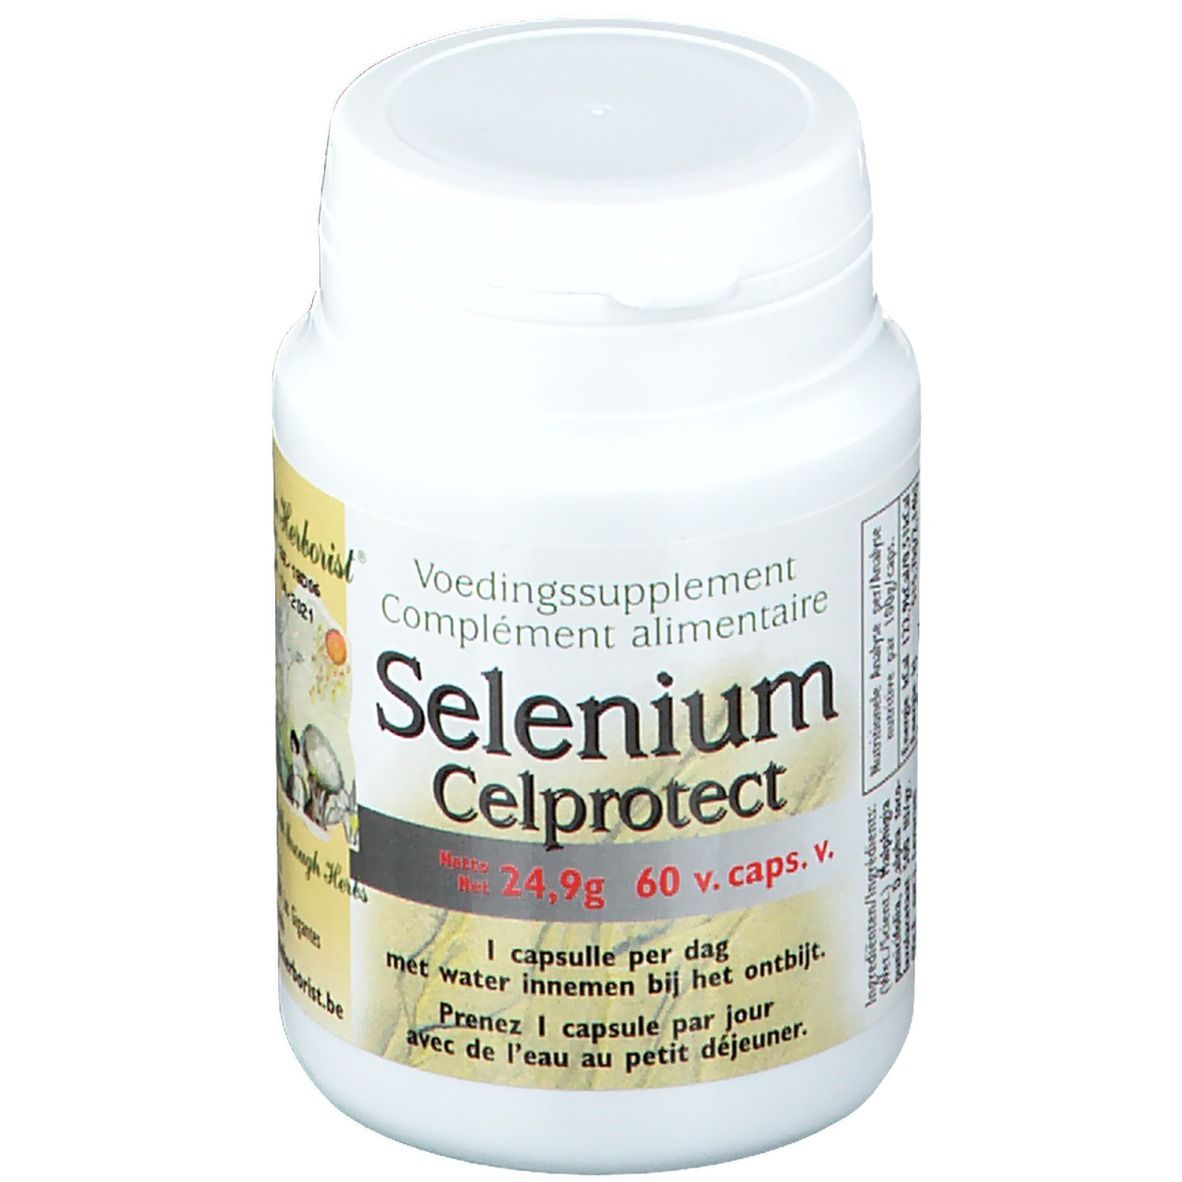 Image of Selenium Celprotect